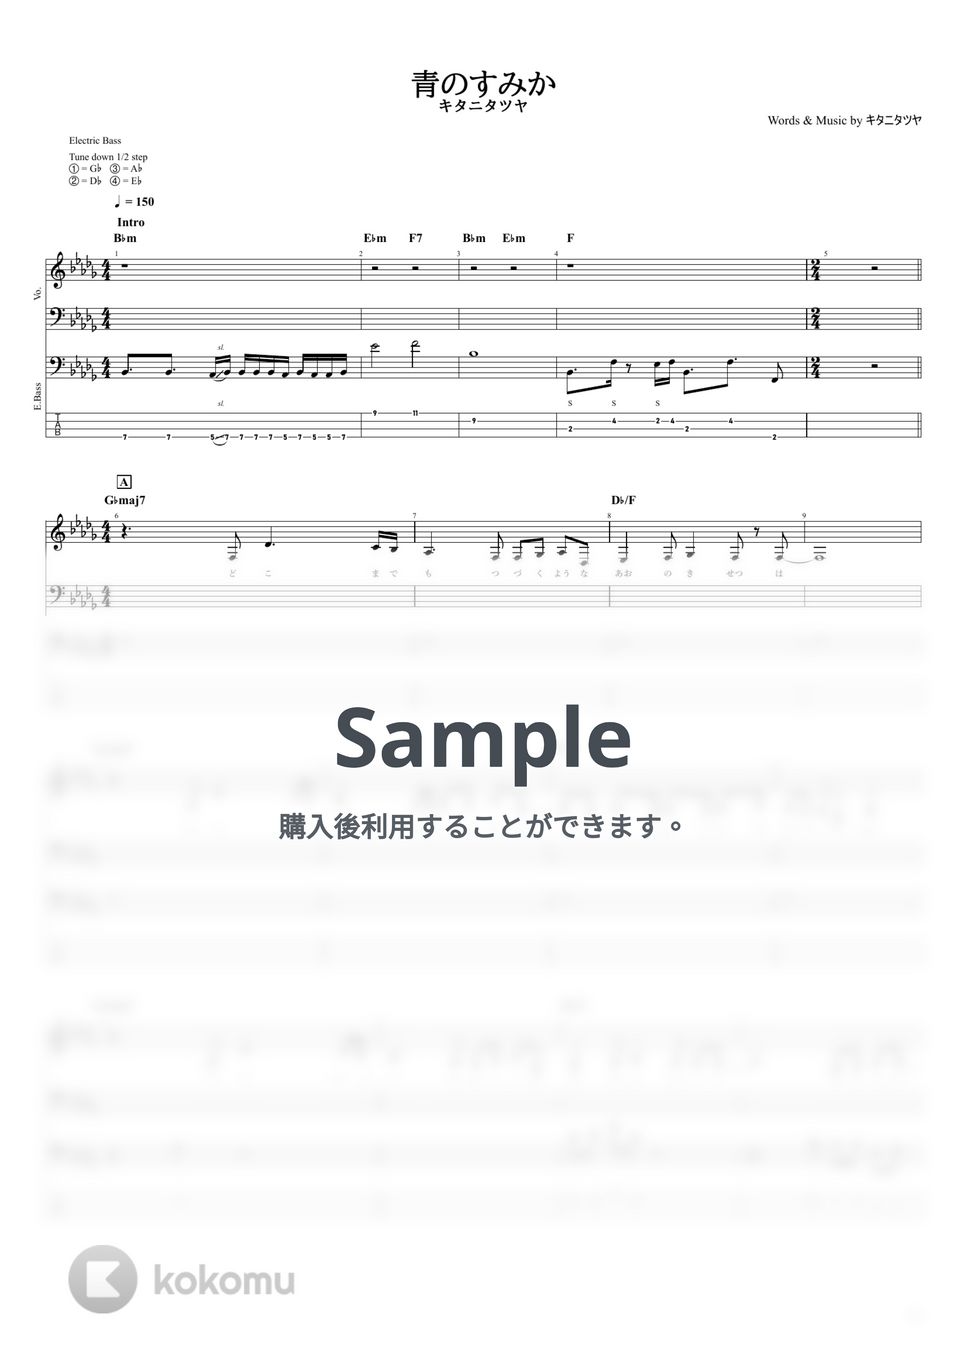 キタニタツヤ - 青のすみか (【ベースTAB譜】/ キタニタツヤ) by ヘクソ